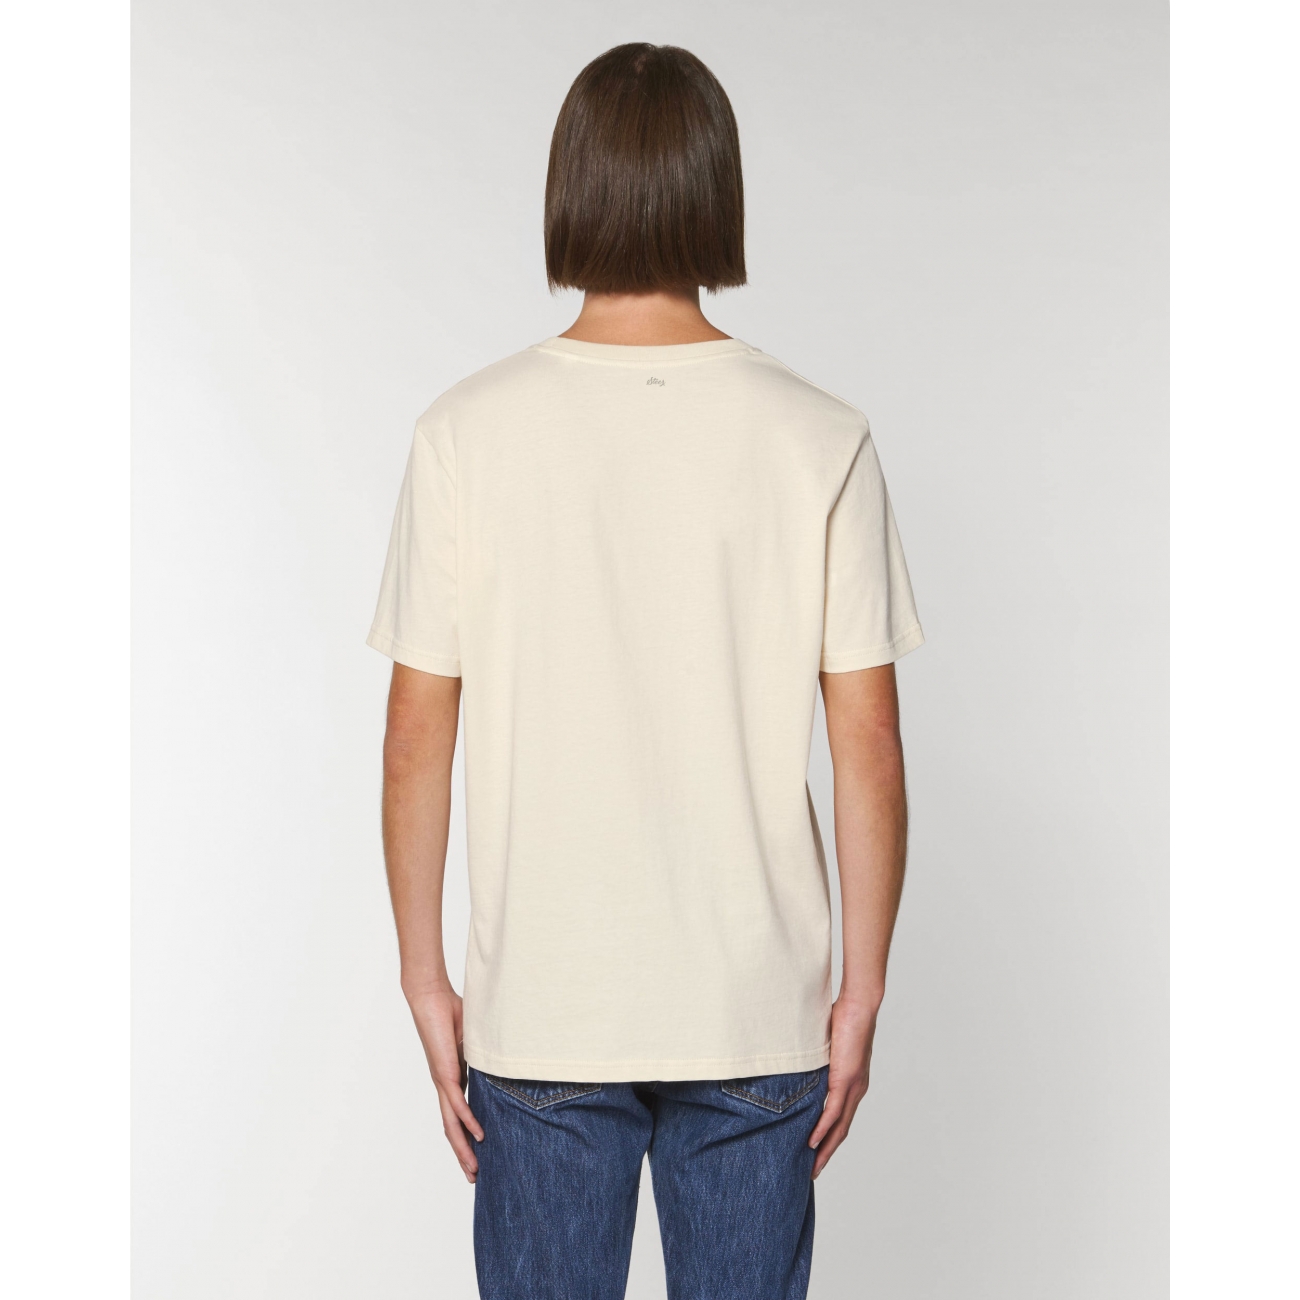 T shirt un adulte : un tee shirt original, décalé en coton bio